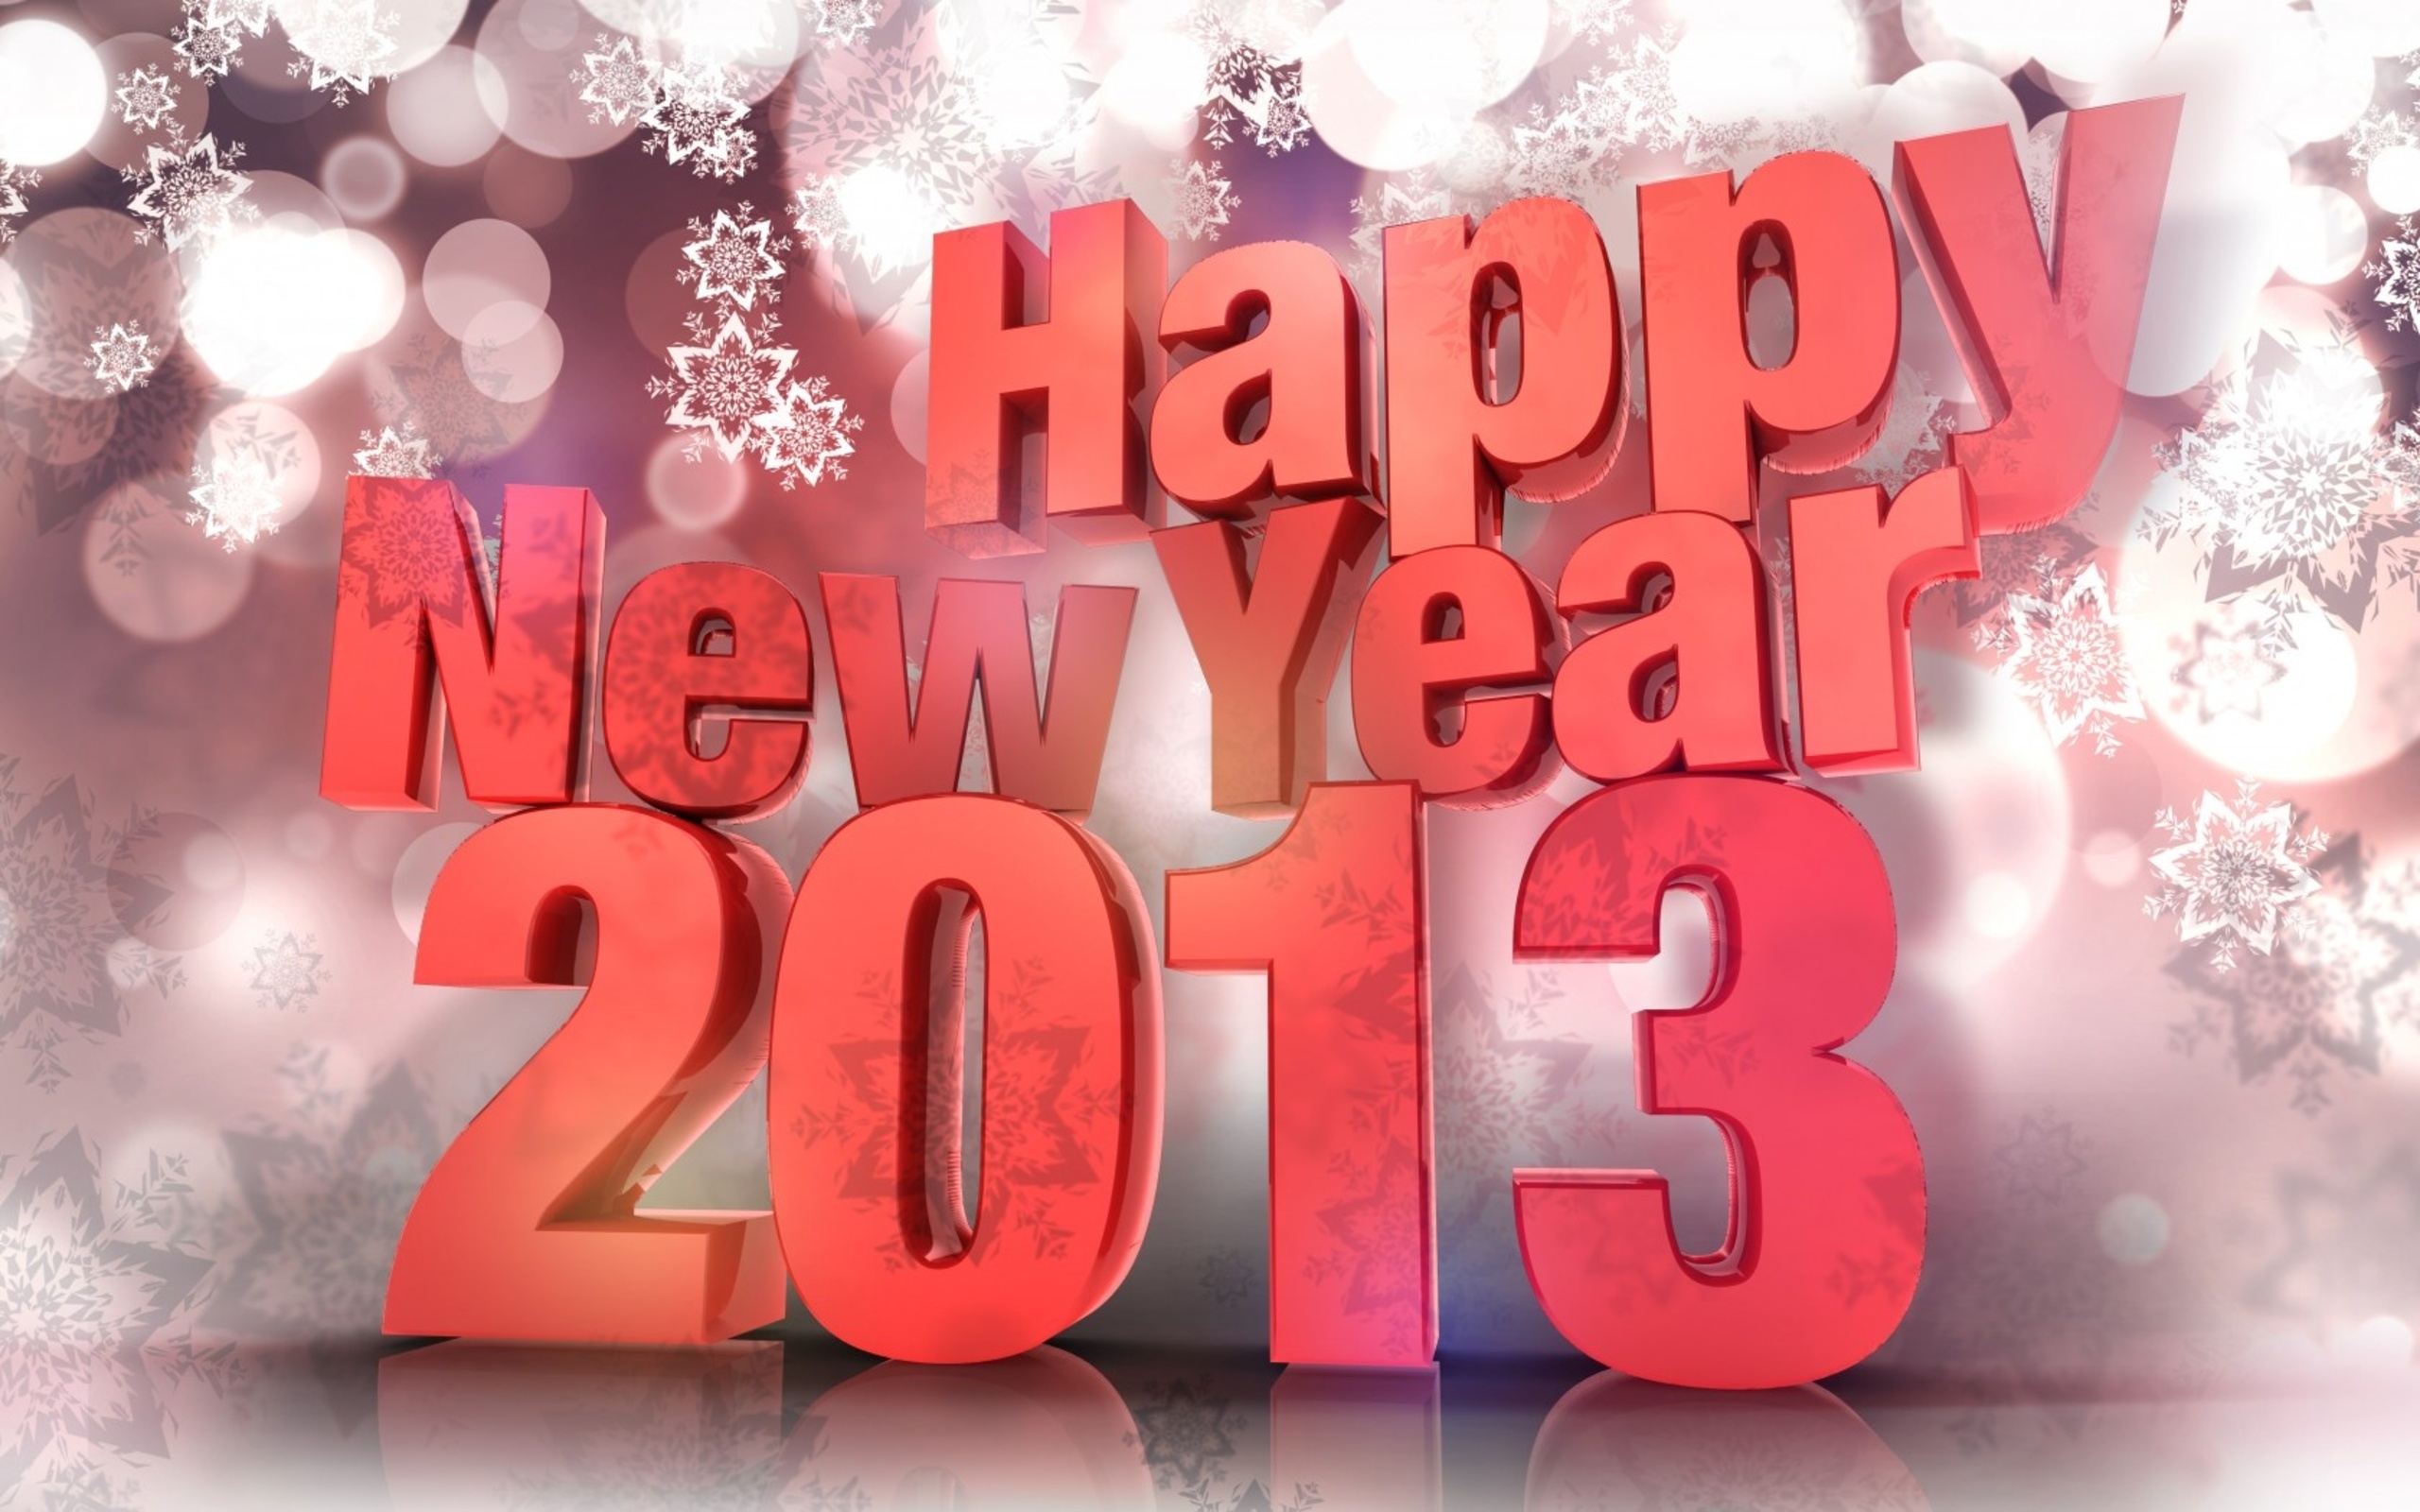 Популярные заставки и фоны Новый Год 2013 на компьютер